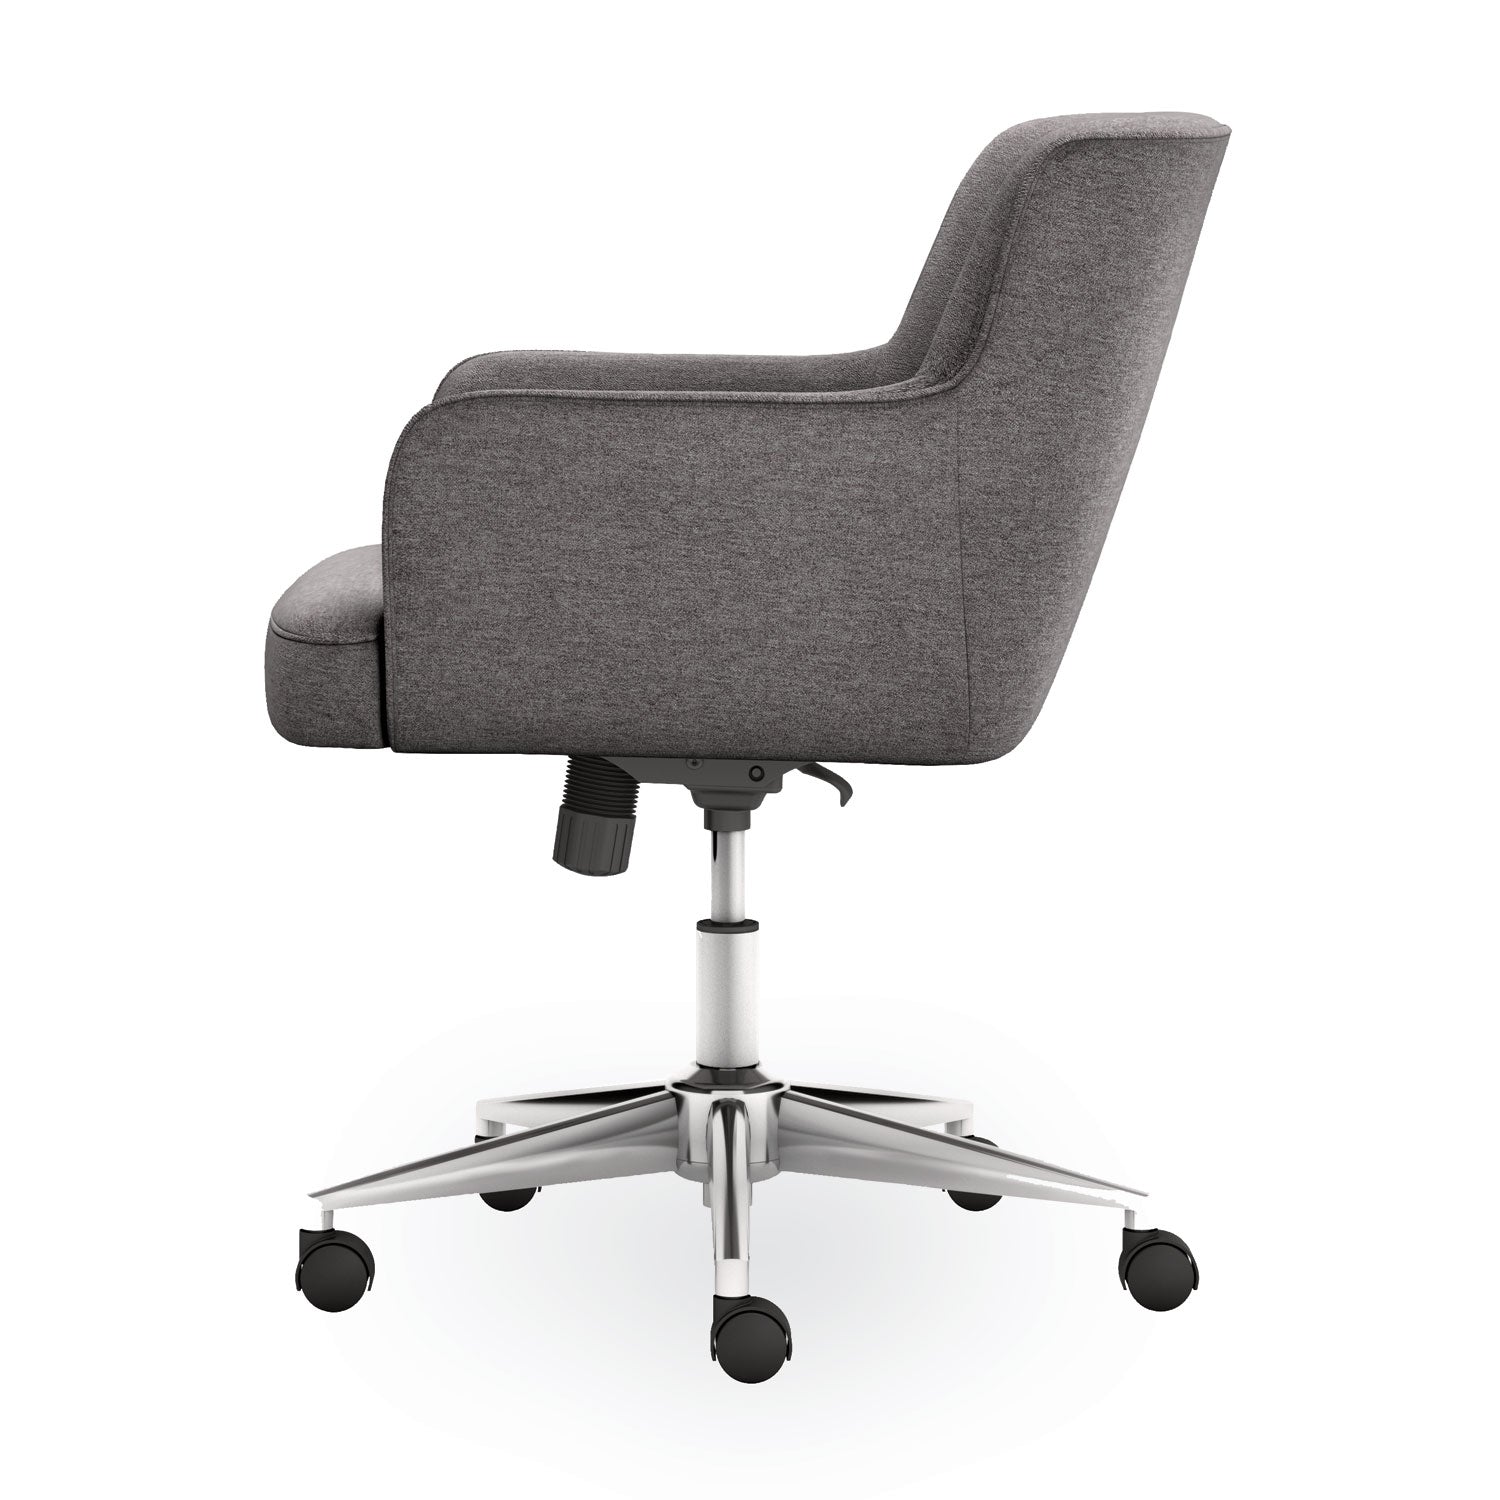 matter-multipurpose-chair-23-x-248-x-34-light-gray-seat-light-gray-back-chrome-base-ships-in-7-10-business-days_honvl232gry01 - 4